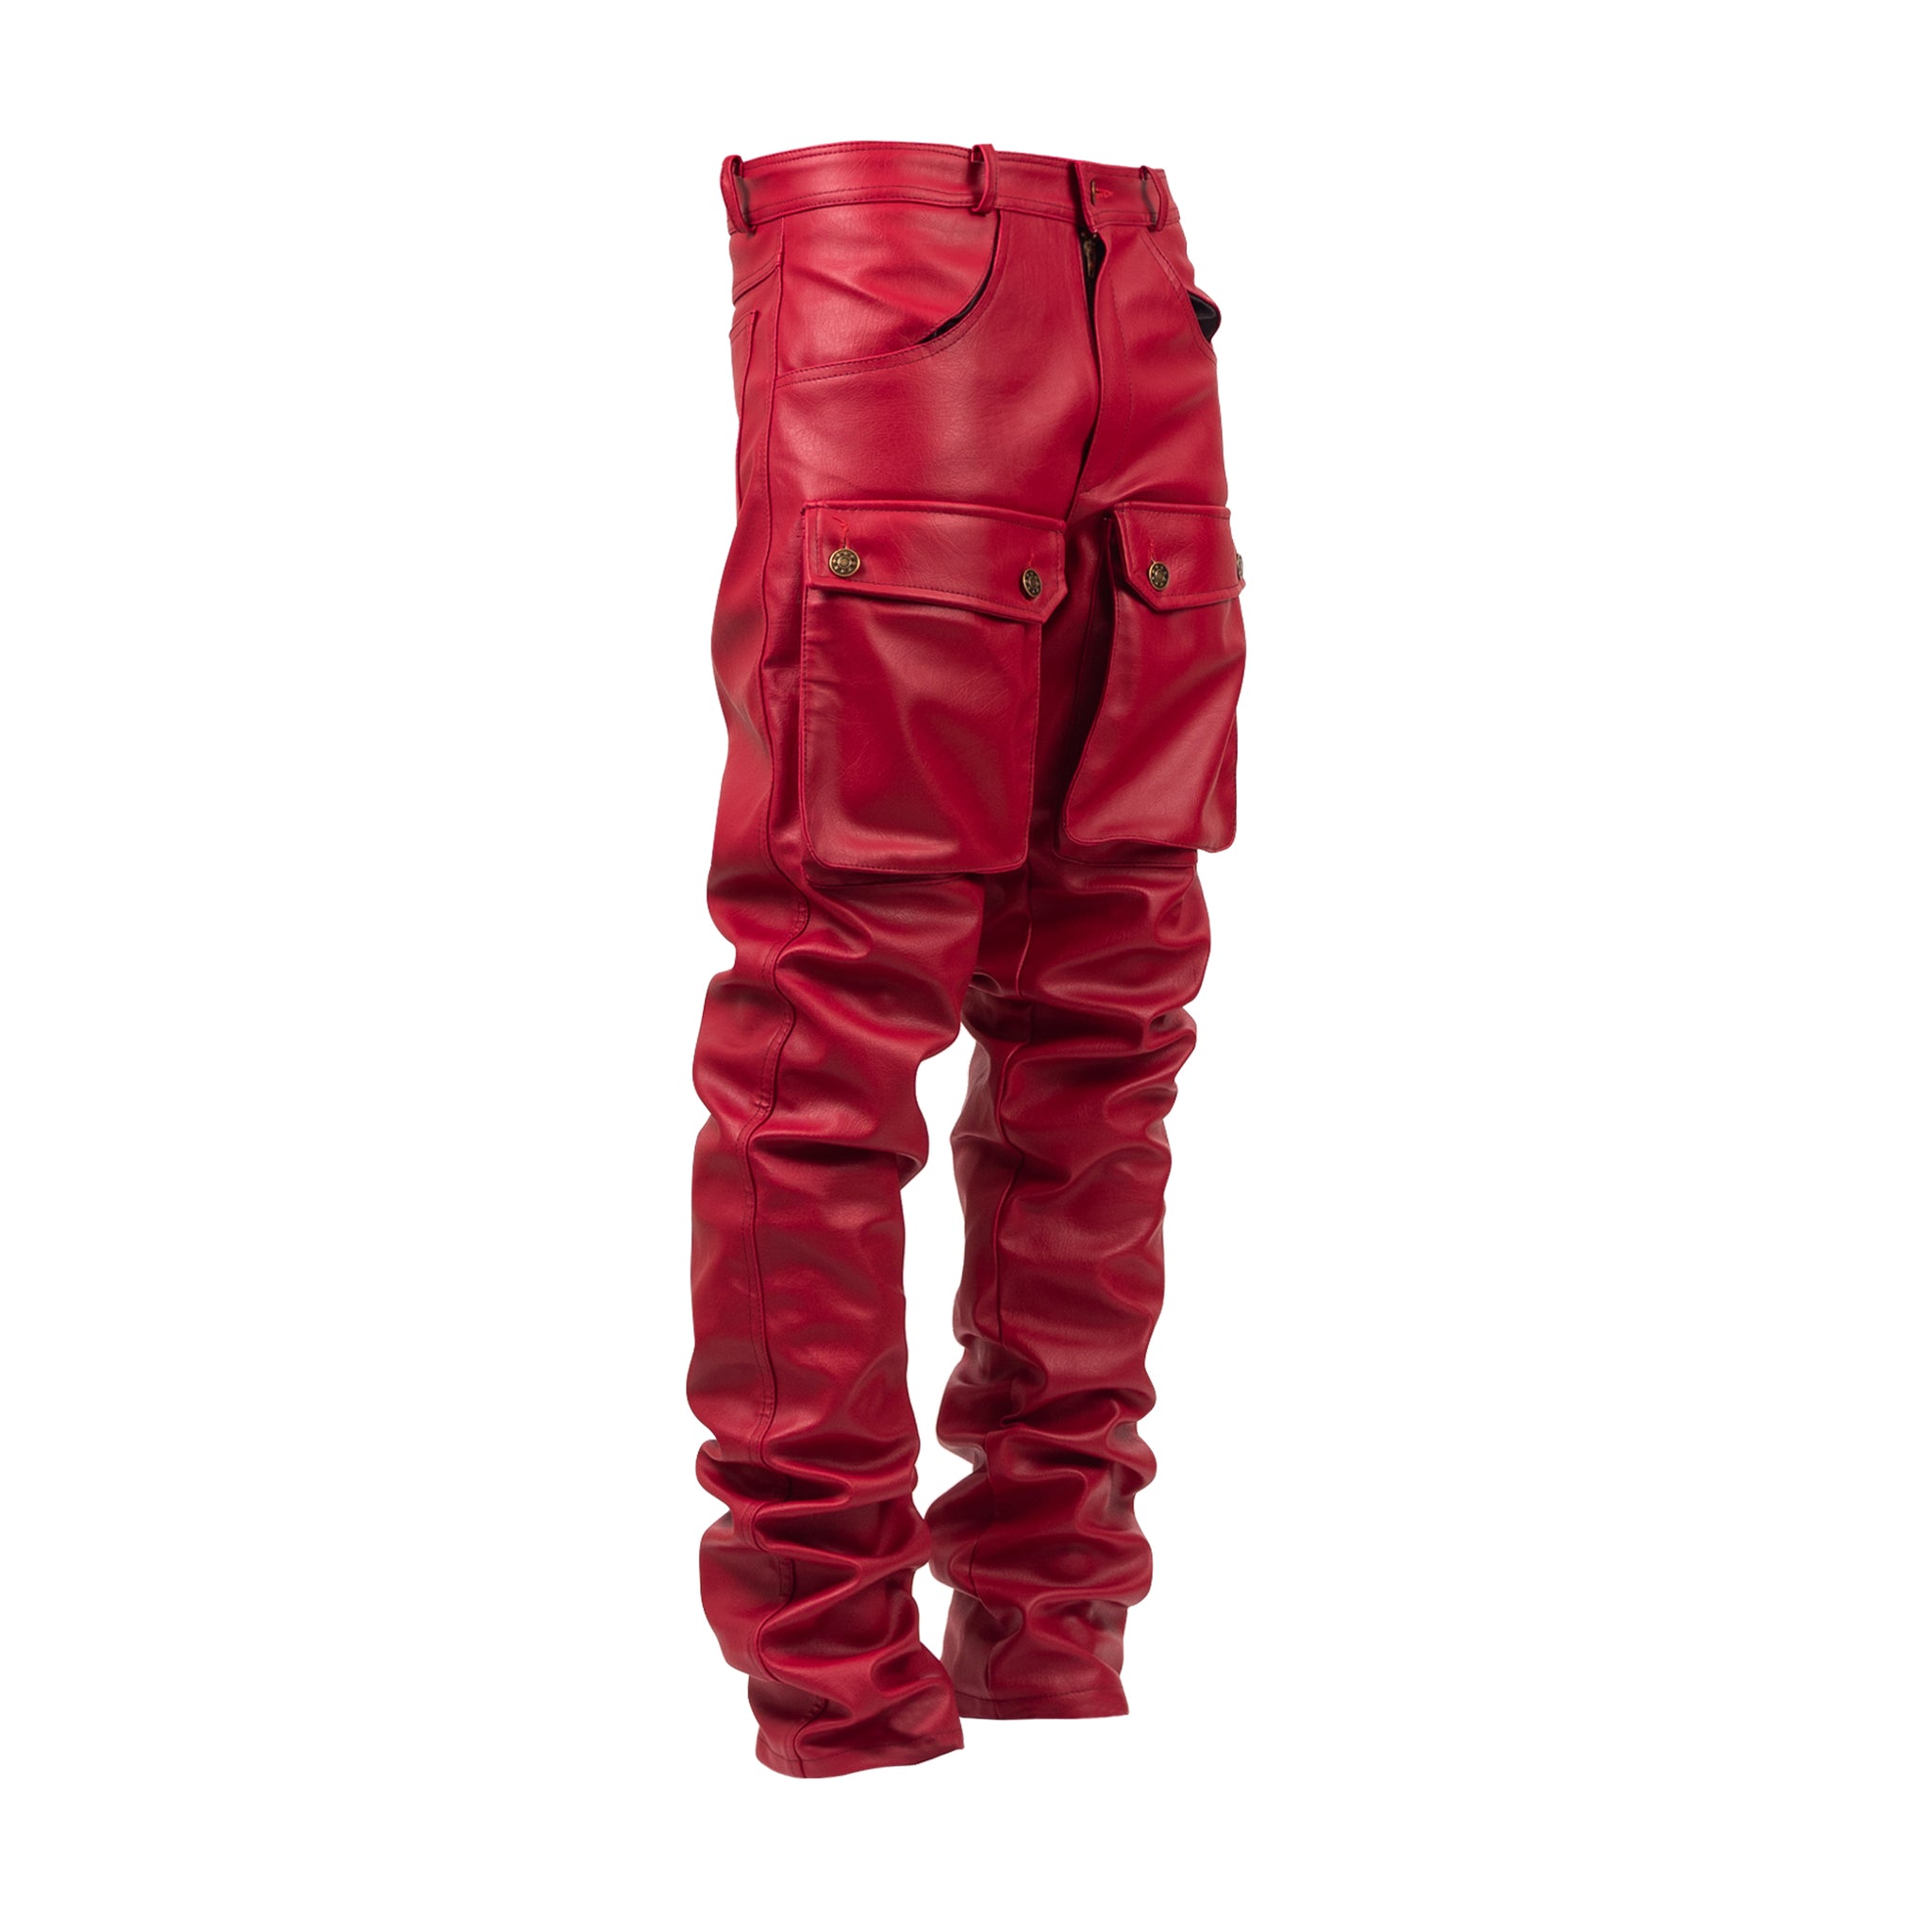 Red pants – Enough